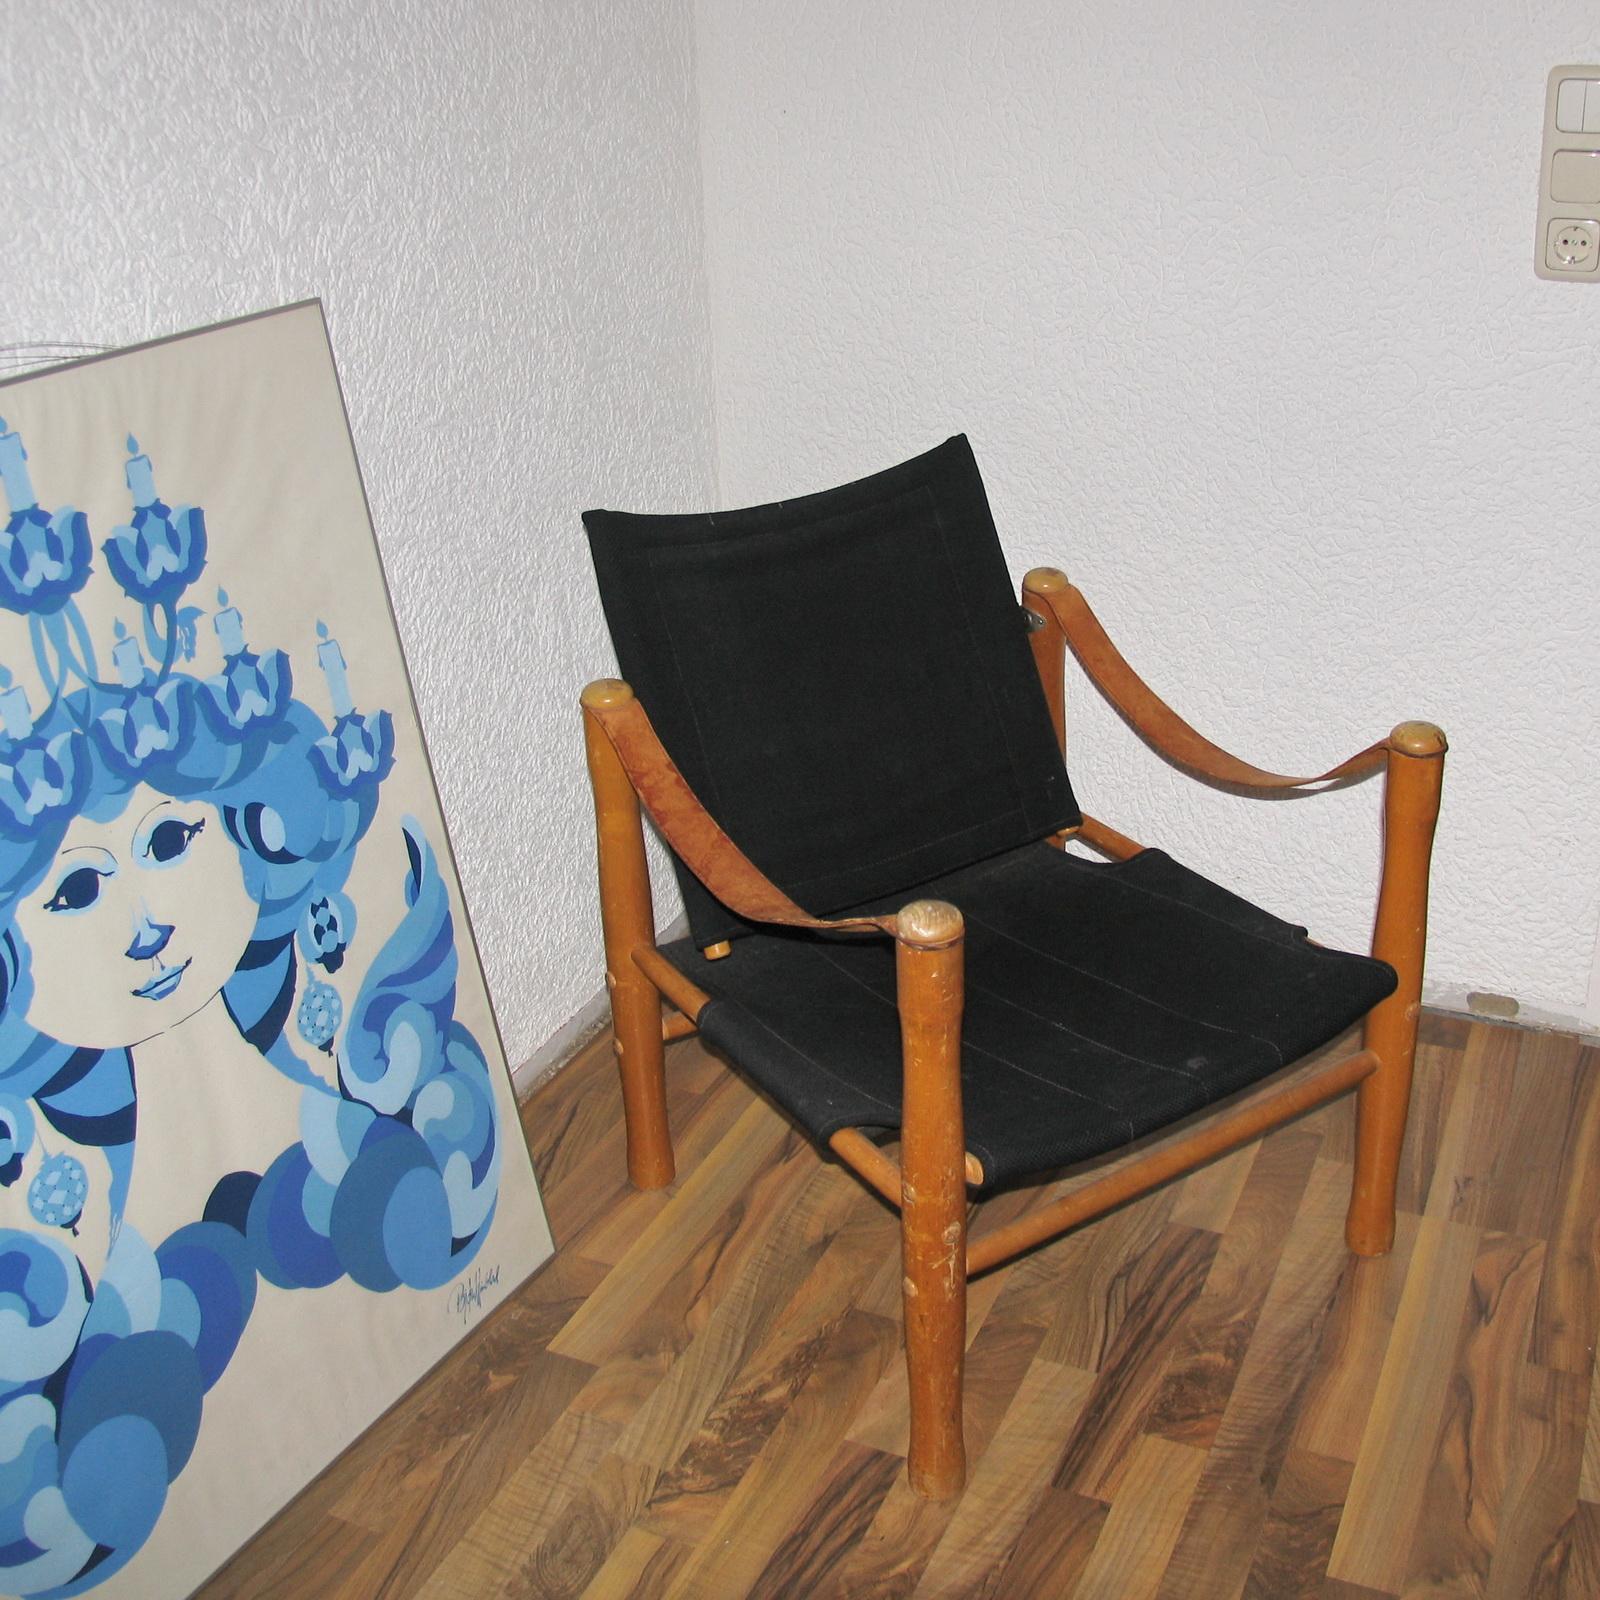 Fauteuil Safari conçu par Elias Svedberg, Suède, années 1940.
Fabriqué en bois, accoudoirs en cuir de harnais marron et toile bleu foncé.
La chaise est en très bon état d'usage, belle patine du bois et du cuir, tapisserie d'origine également en